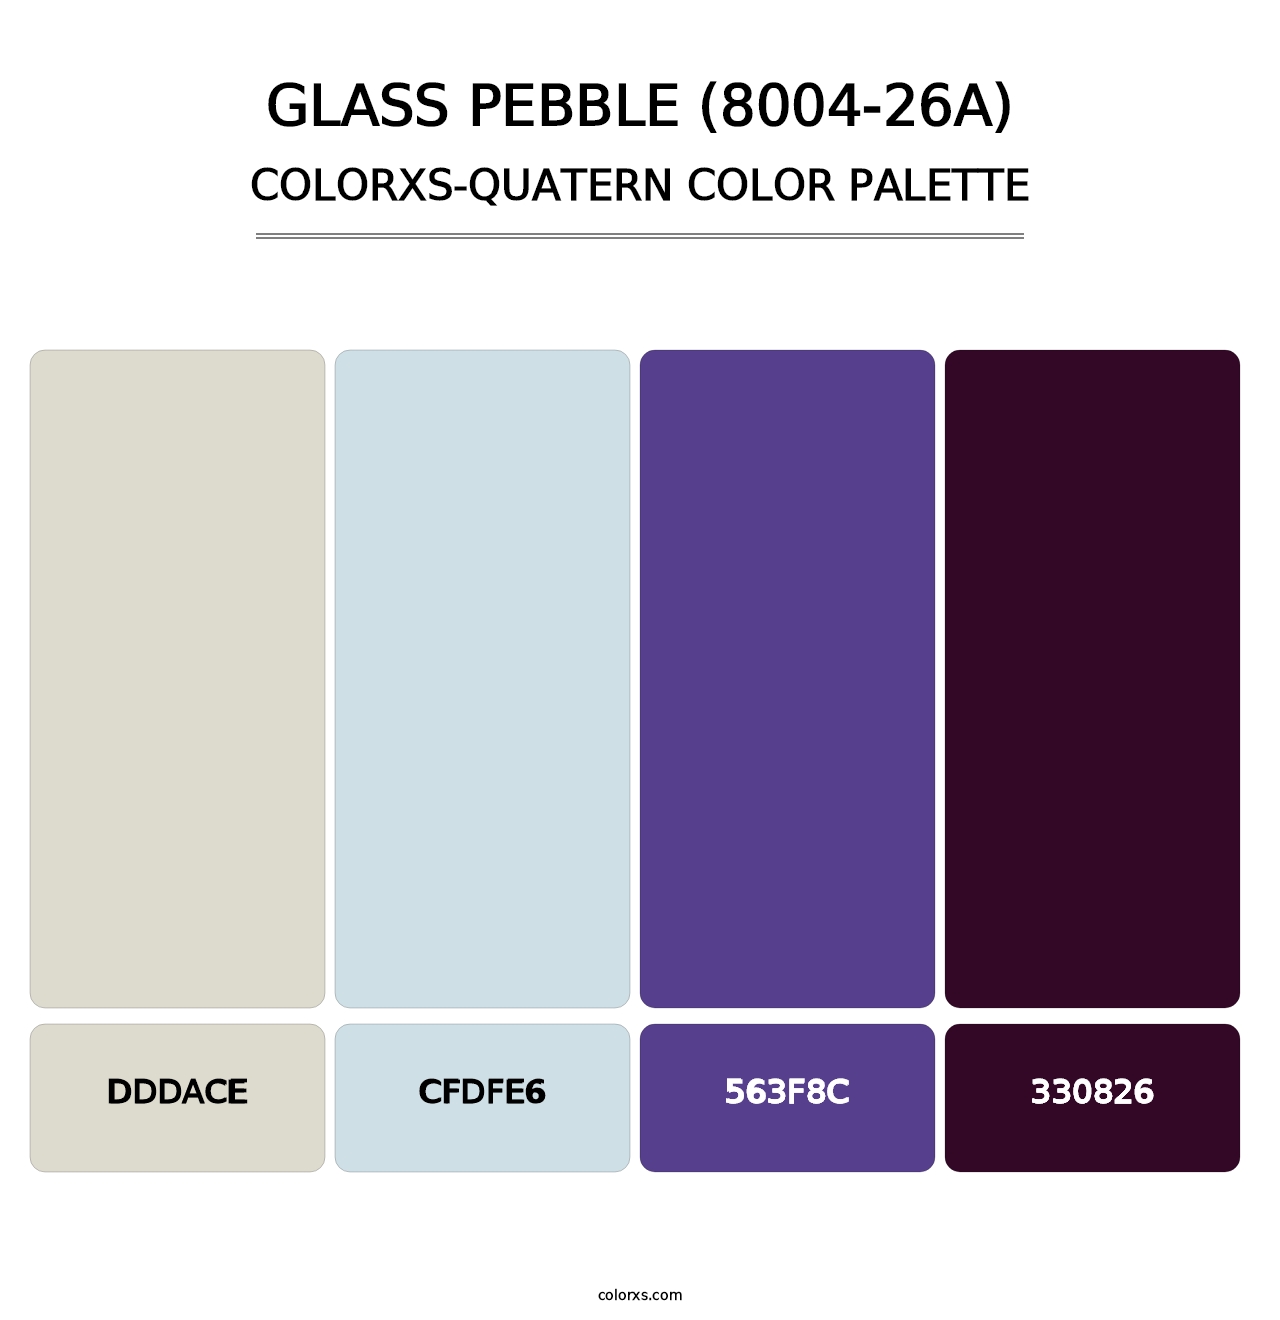 Glass Pebble (8004-26A) - Colorxs Quatern Palette